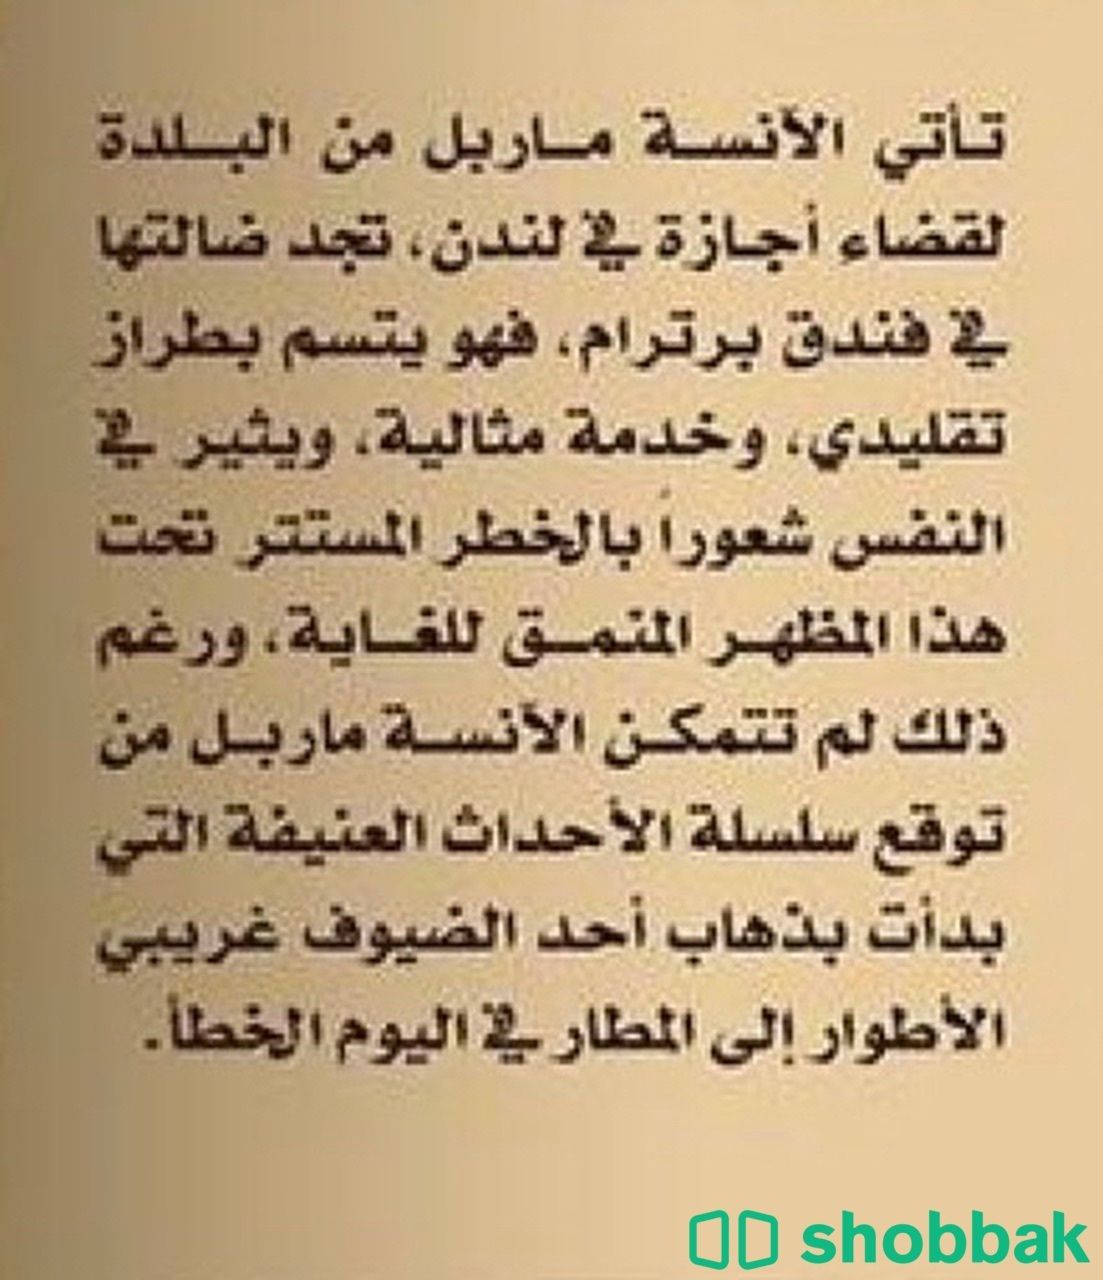 كتاب لغز فندق برترام للكاتبة اجاثا كريستي Shobbak Saudi Arabia